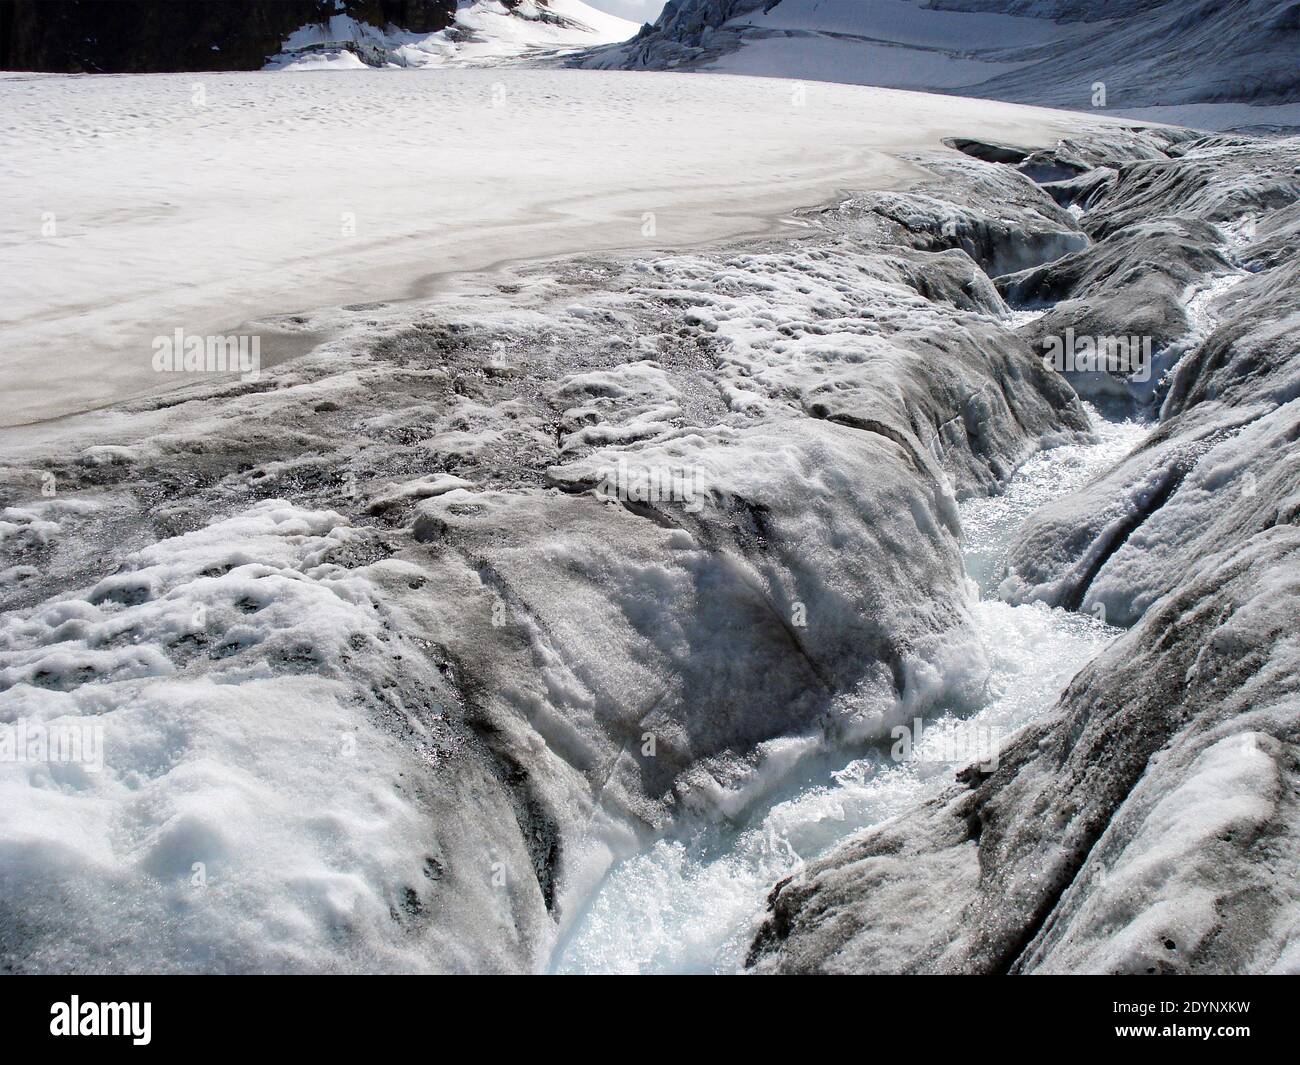 Un torrent épiglacial (également connu sous le nom de bédière) à la surface du glacier; glacier de Corbassière. Grand massif de montagne Combin. Alpes suisses. Banque D'Images